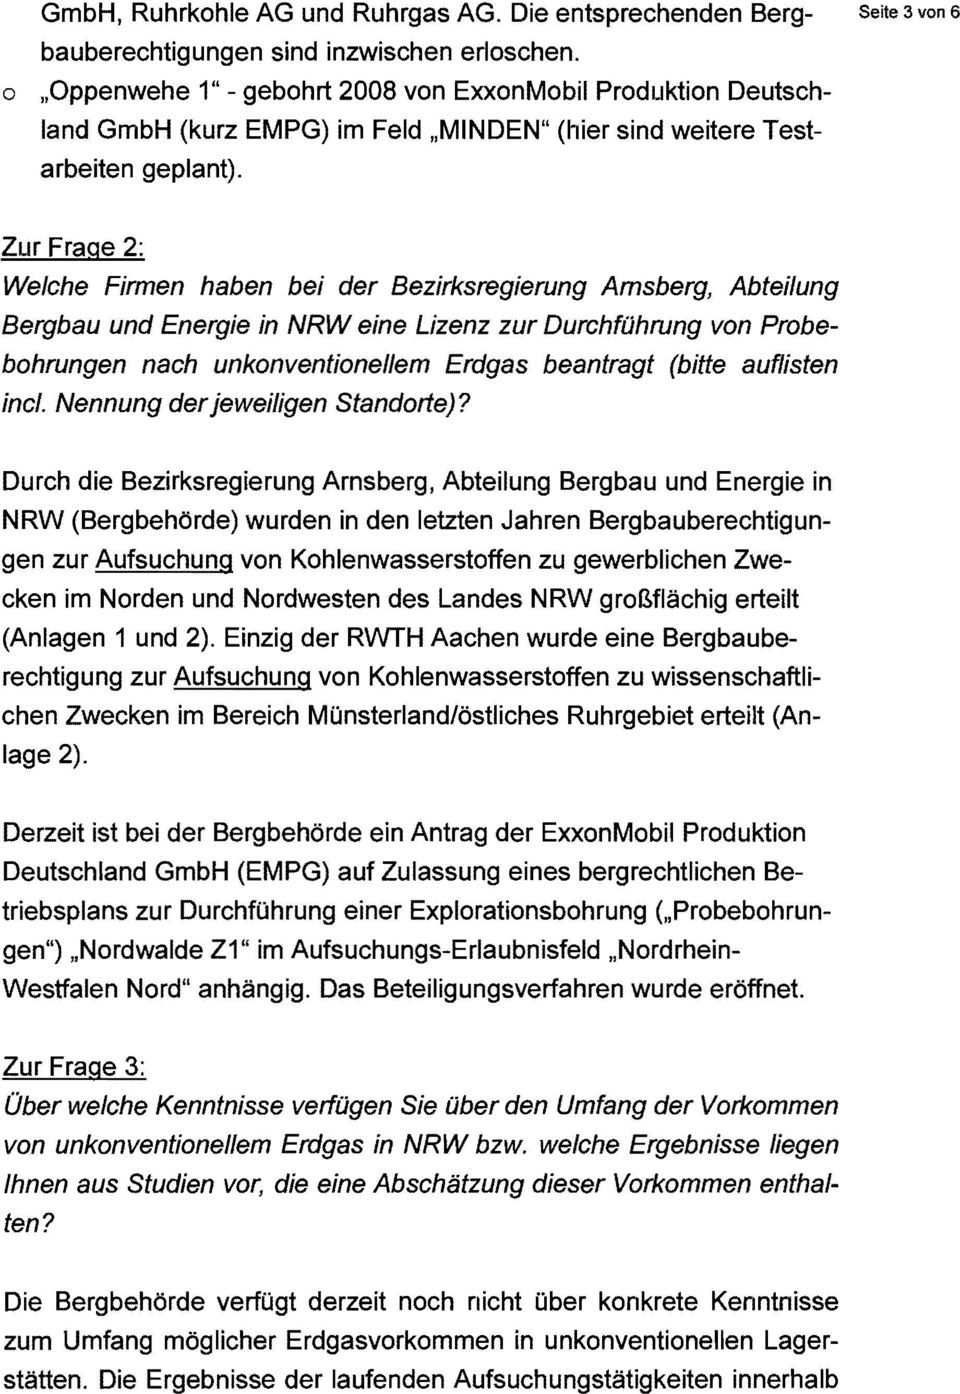 Zur Frage 2: Welche Firmen haben bei der Bezirksregierung Amsberg, Abteilung Bergbau und Energie in NRWeine Lizenz zur Durchführung von Probebohrungen nach unkonventionellem Erdgas beantragt (bitte